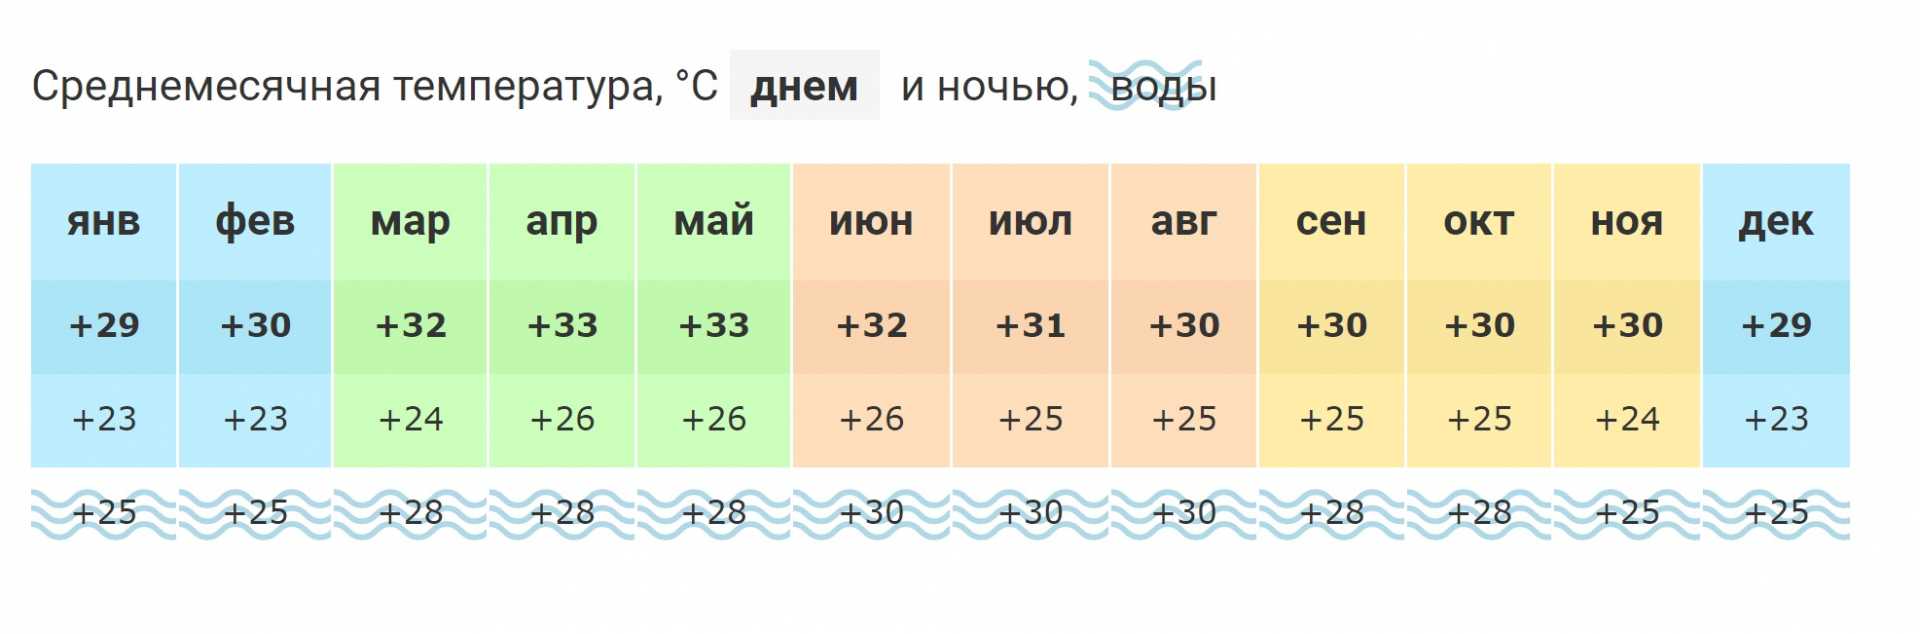 Турция погода в июне и температура воды. Черногория климат по месяцам. Средняя температура в Черногории по месяцам. Температура в Черногории по месяцам и температура воды. Черногория температура по месяцам.